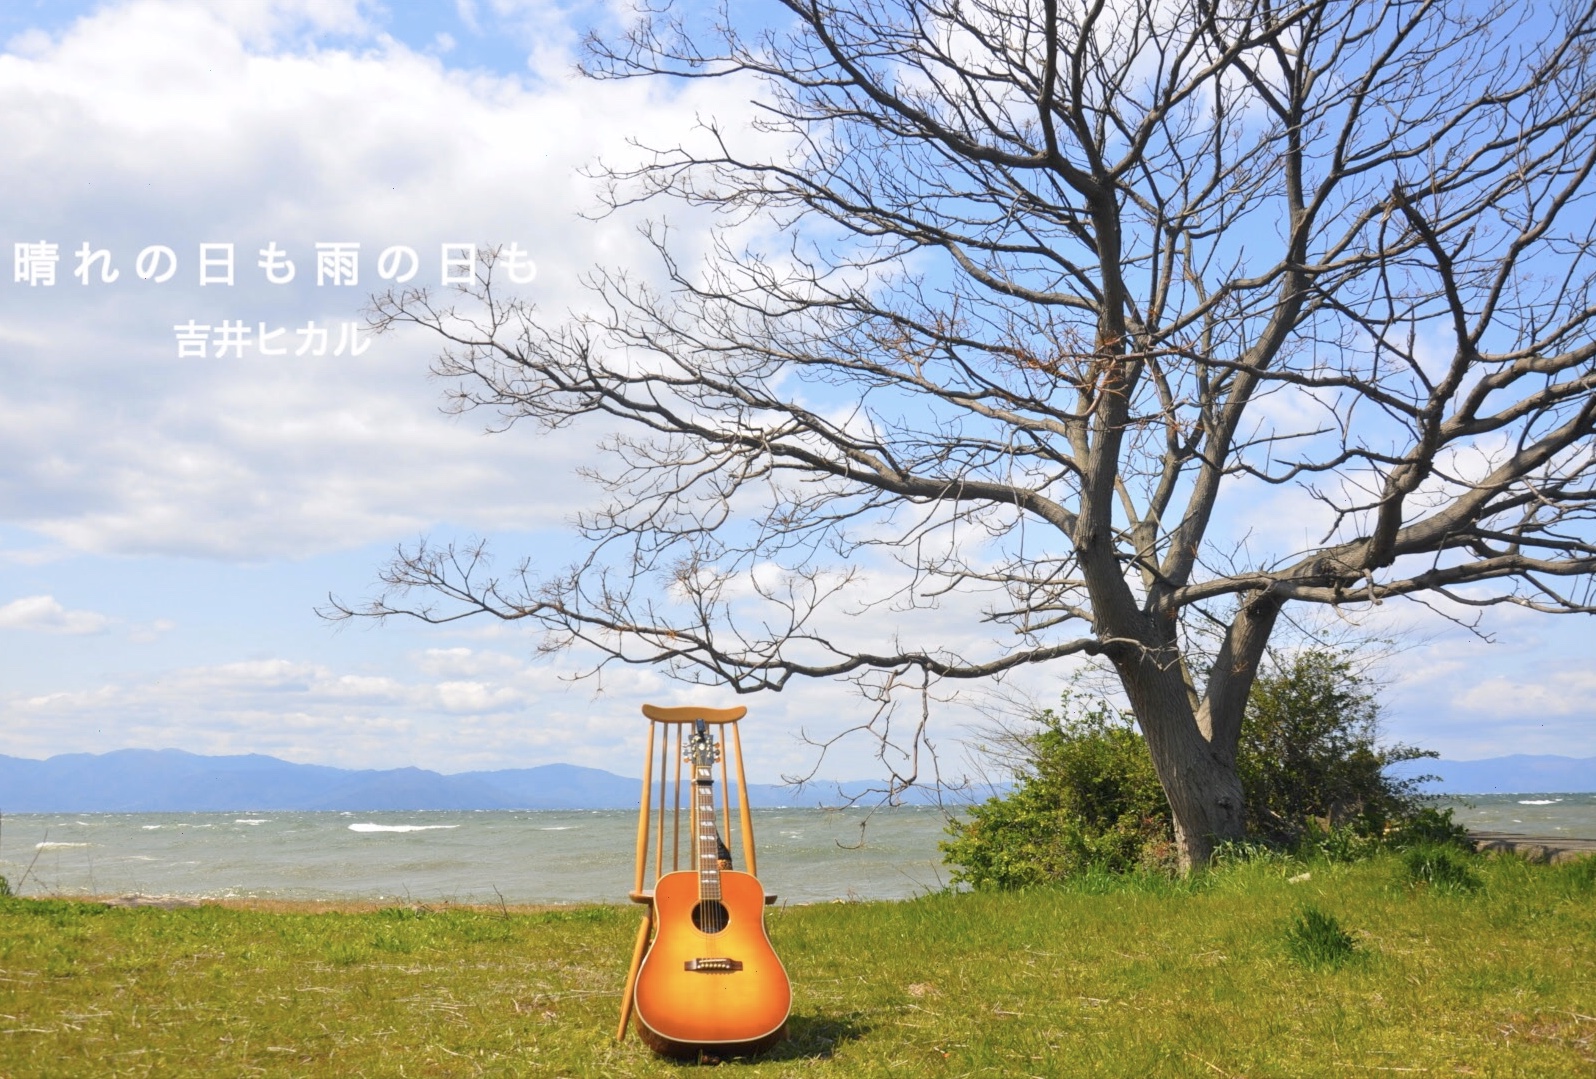 吉井ヒカル『晴れの日も、雨の日も』SHORT MV